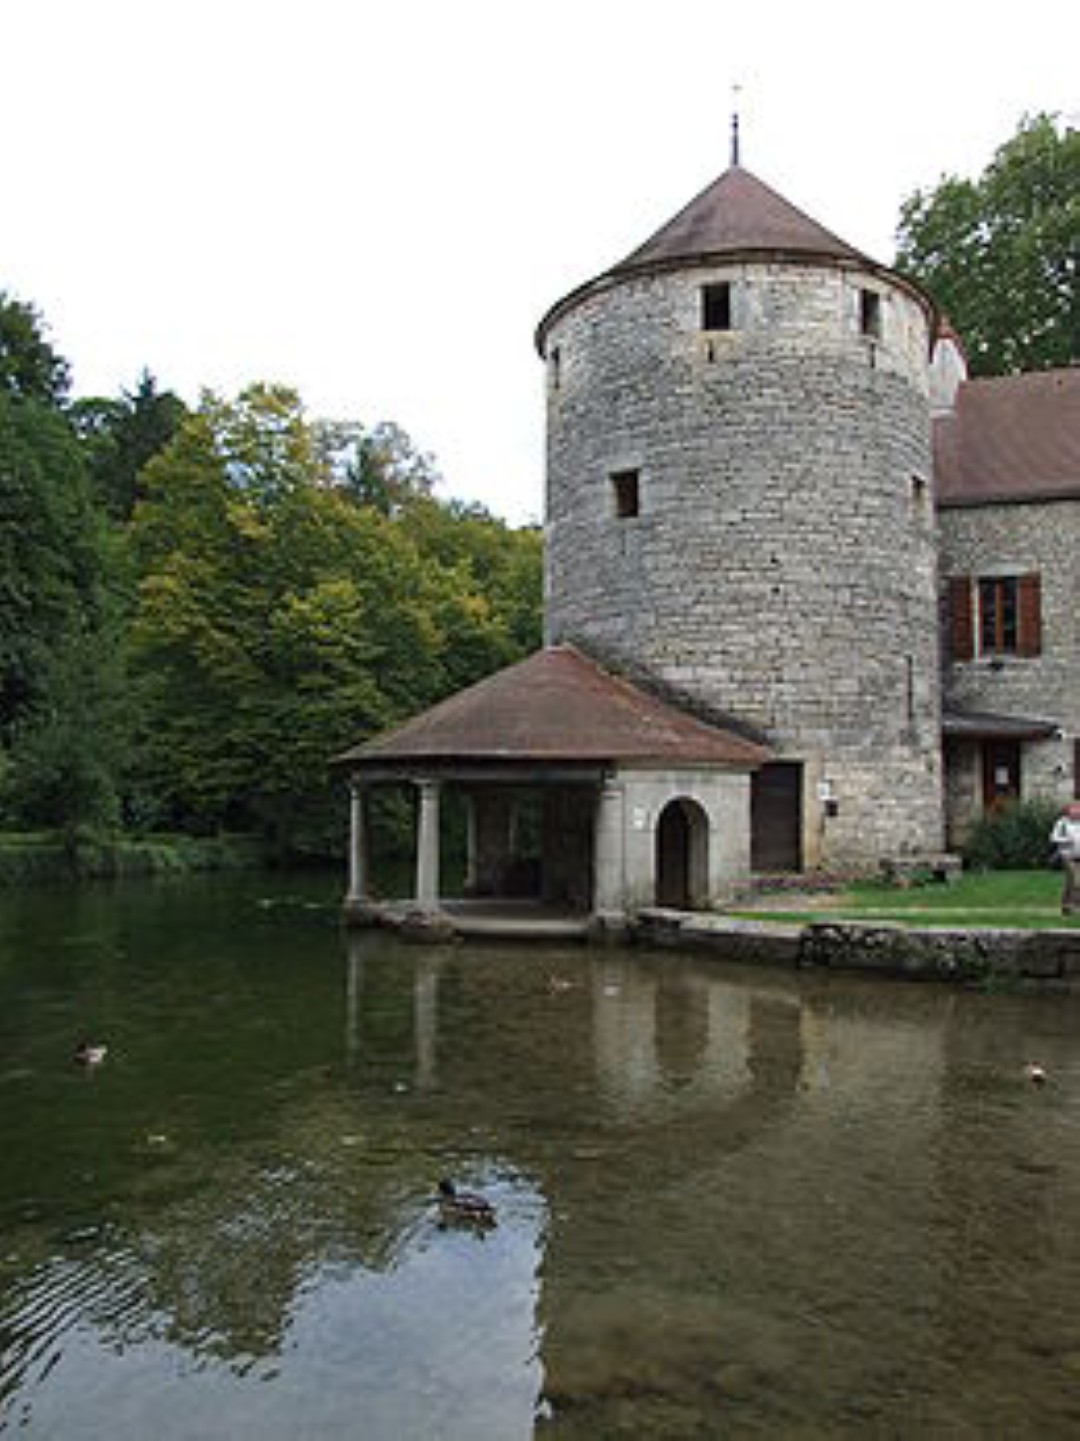 הבית של שמן הקנולה ומשקה הקיר רויאל (צילום: ויקיפדיה) (צילום: ויקיפדיה)